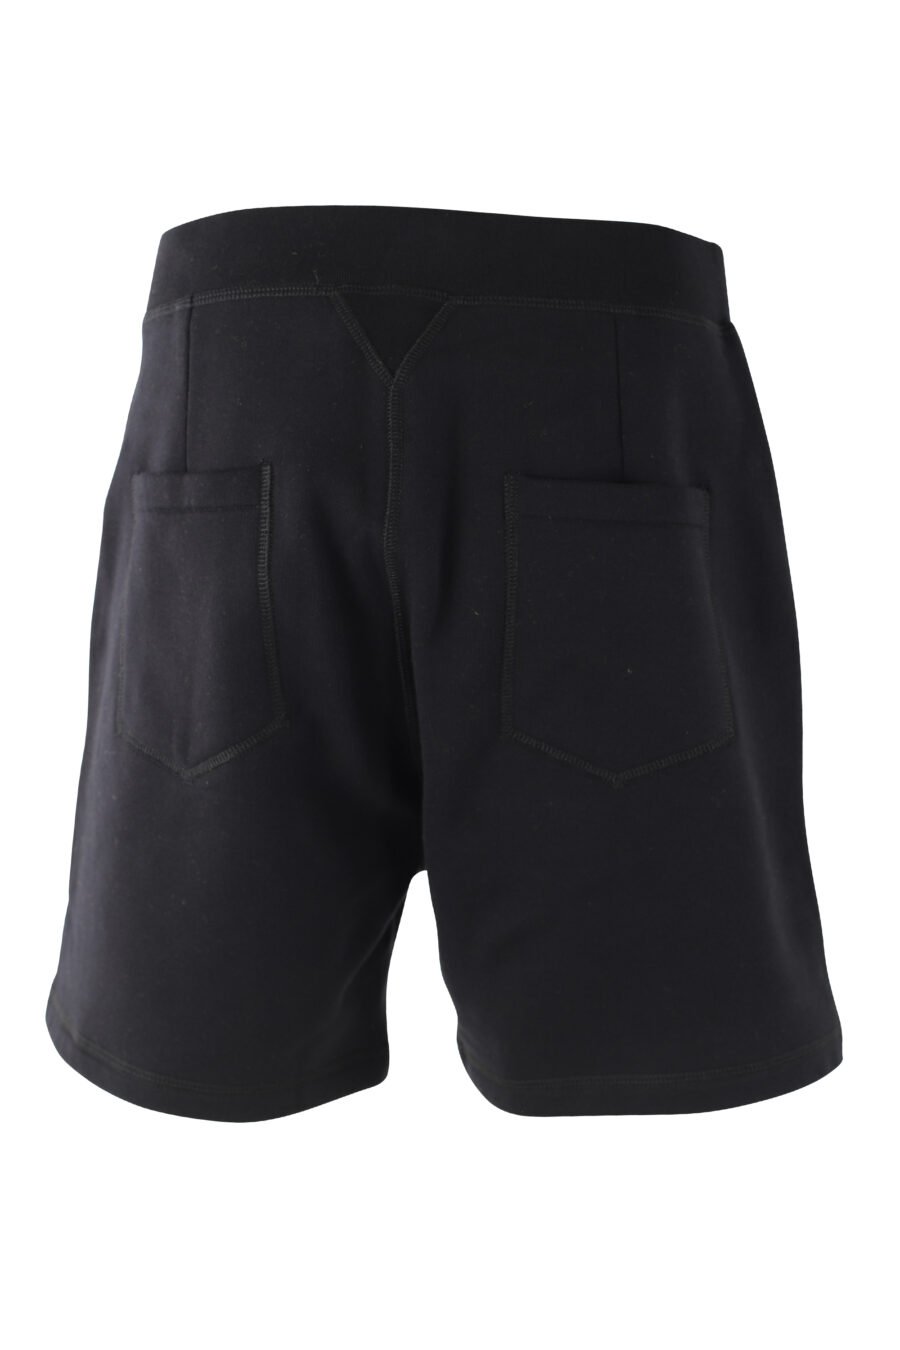 Pantalón de chándal corto negro con doble logo lateral - IMG 9713